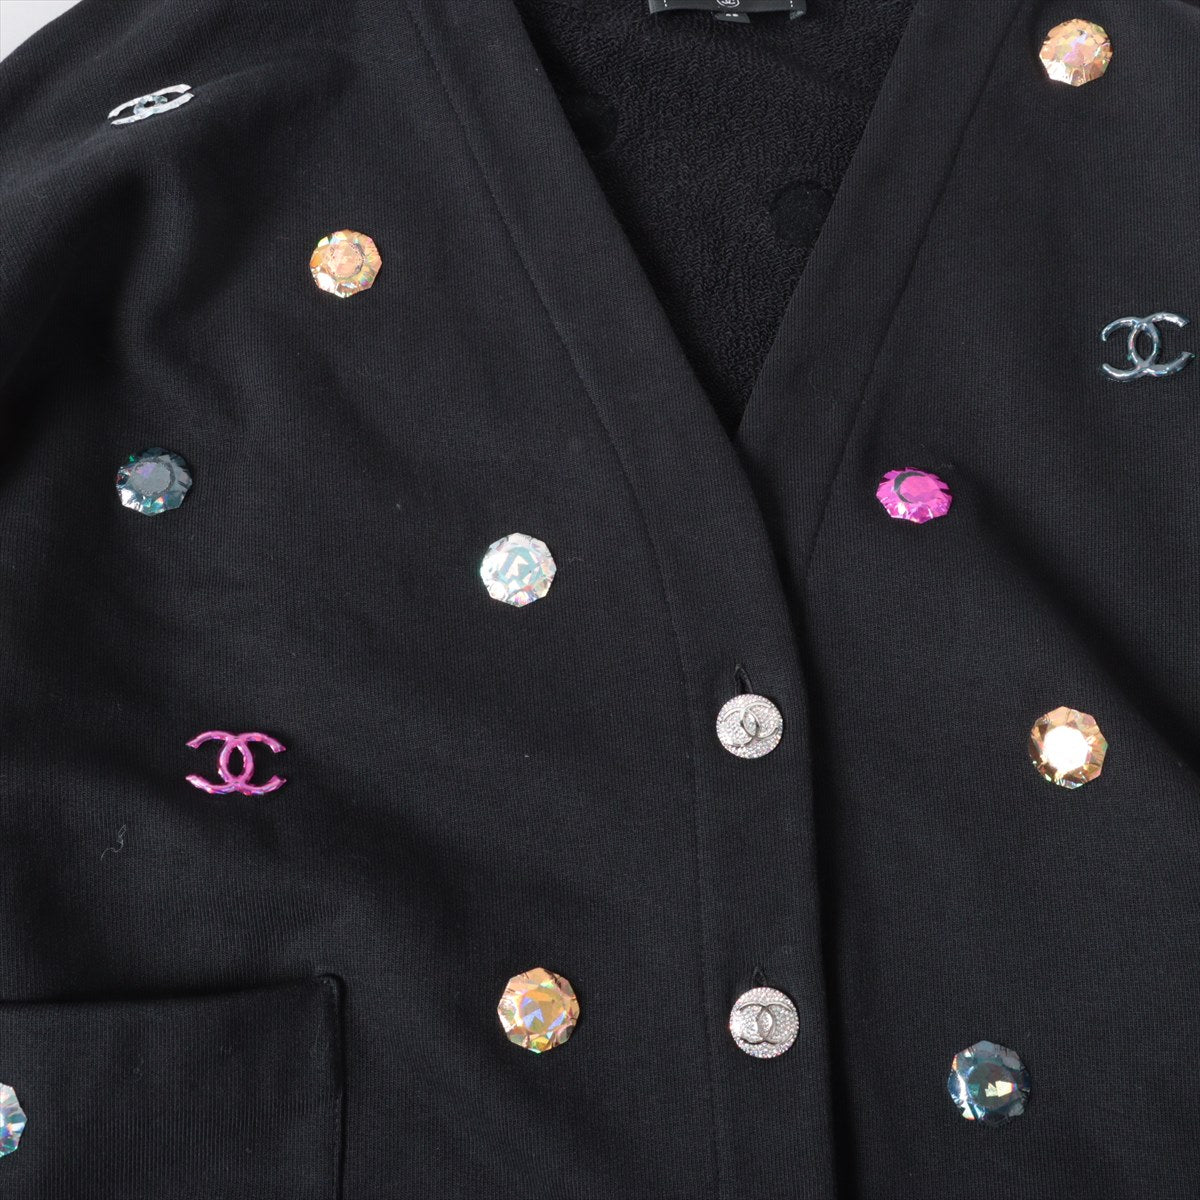 Chanel Coco Button P71 Cotton Cardigan 50  Black P71493K10289